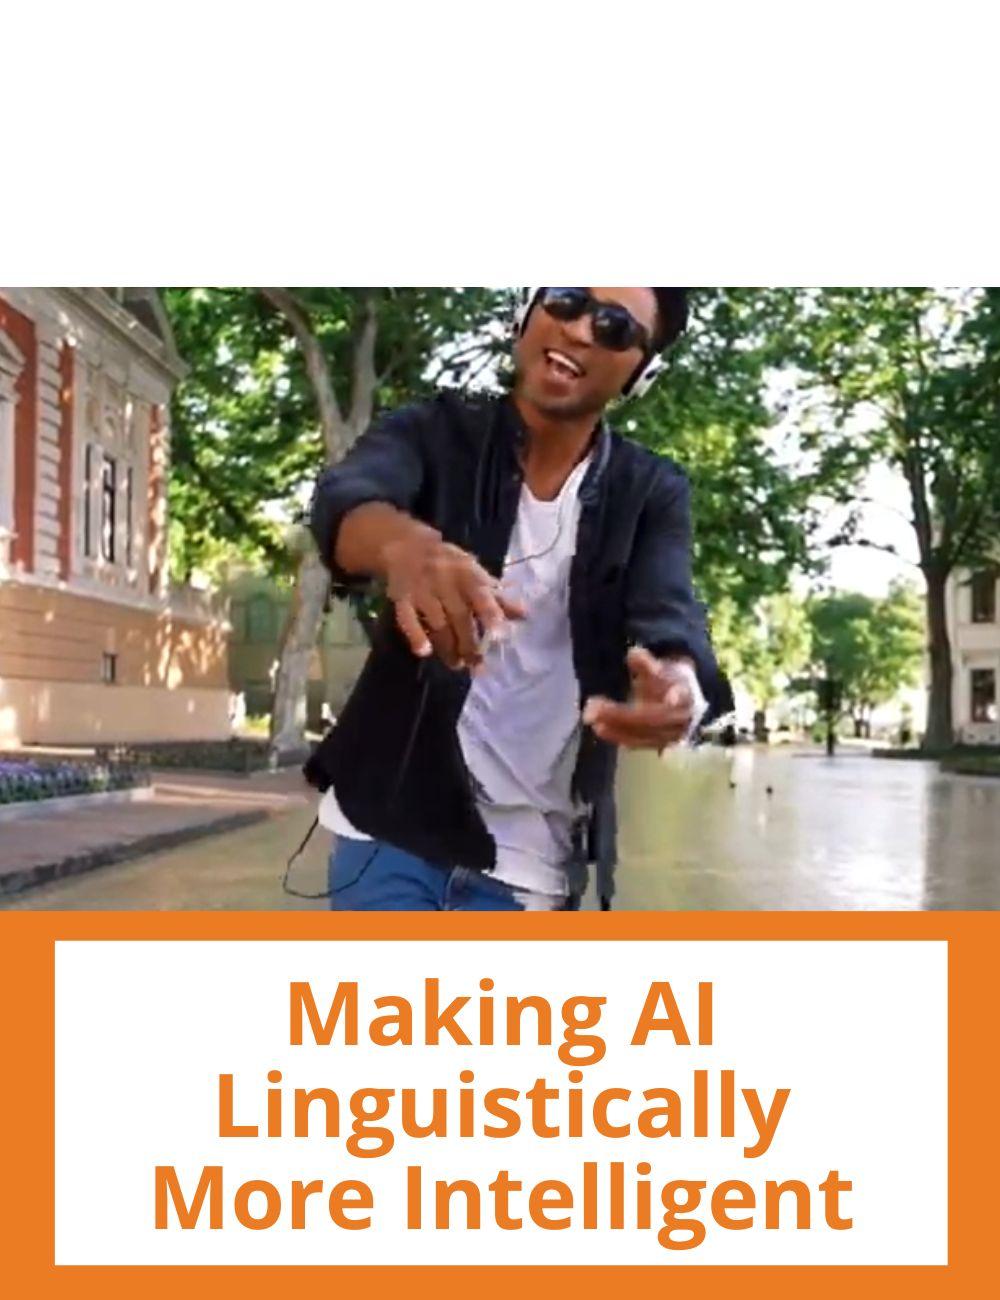 Immagine con podcast e video ad articoli su temi simili. L'immagine di un ragazzo che gesticola rimanda al video intitolato: Making AI Linguistically More Intelligent